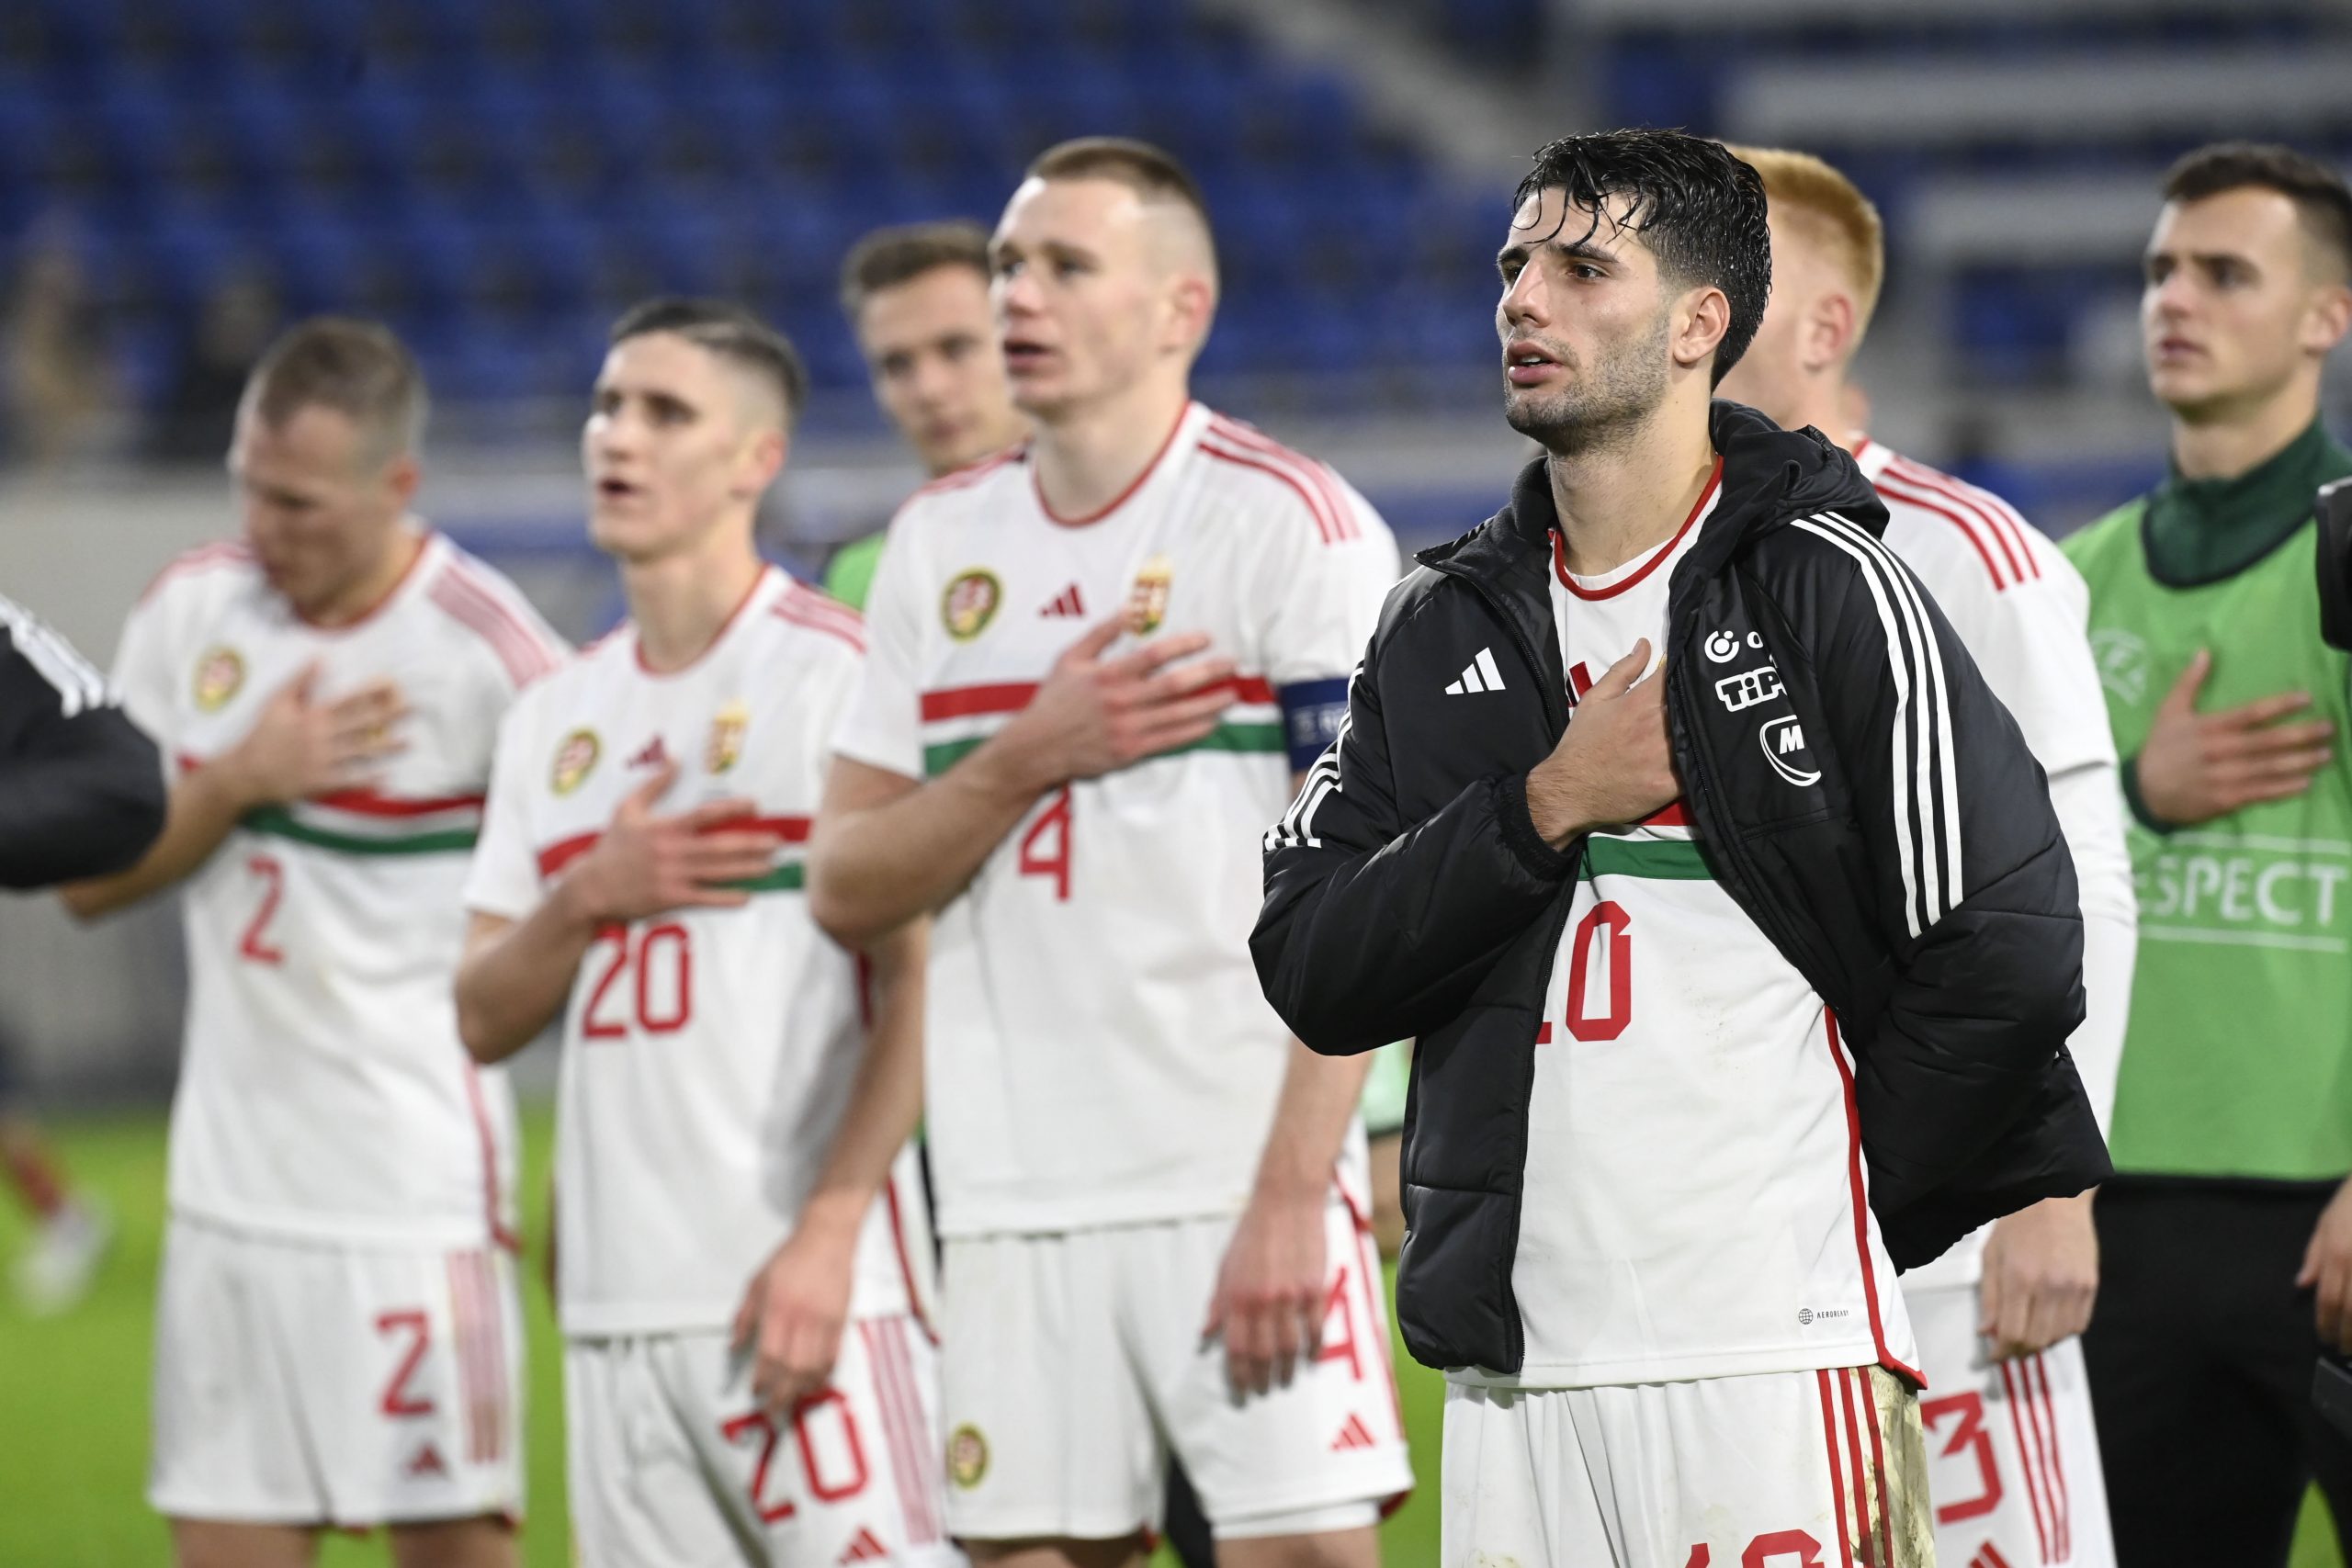 Ungarns Nationalmannschaft erreichte im spannenden Spiel gegen Luxemburg ein Unentschieden